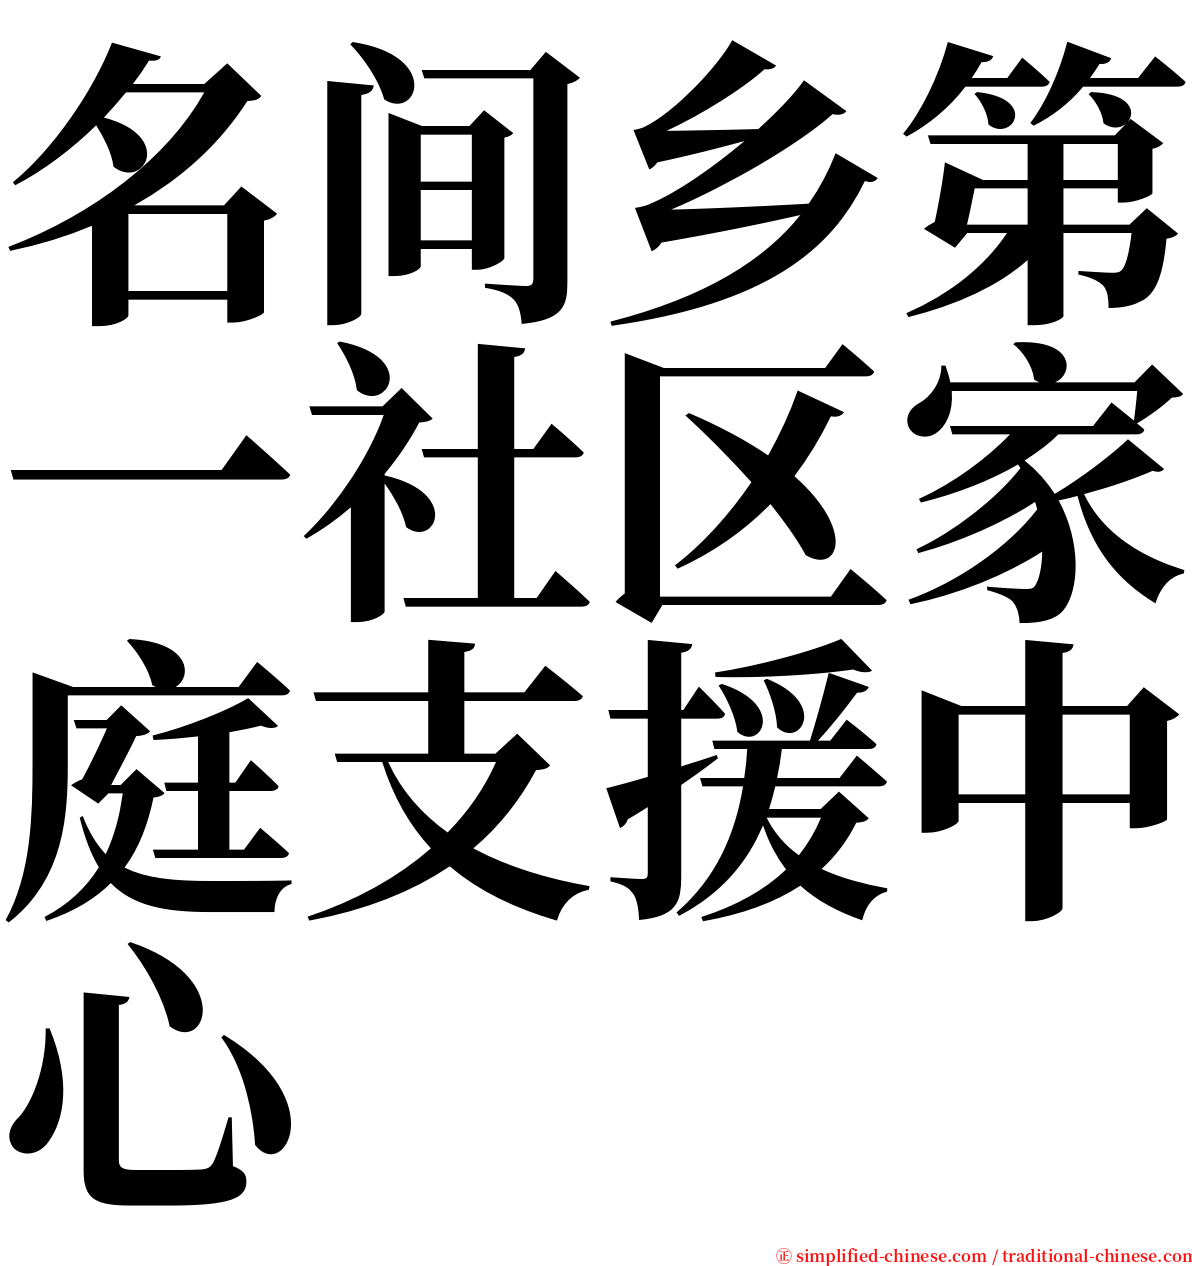 名间乡第一社区家庭支援中心 serif font